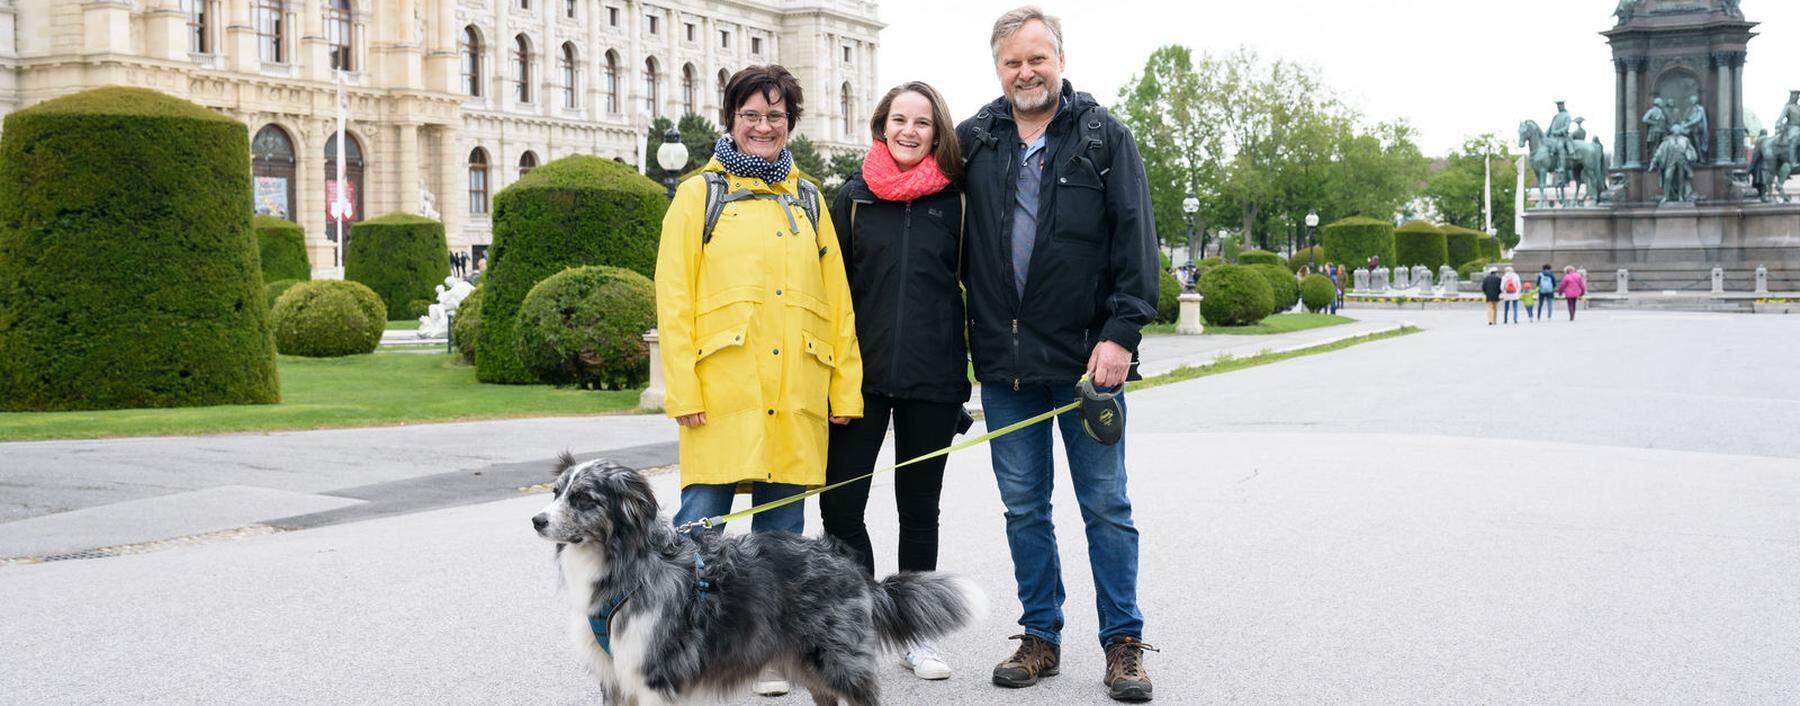 Lea Cramer (Mitte) sieht nach einem Dreivierteljahr endlich wieder ihre Eltern Sabine und Heiko Cramer, die in Deutschland leben.